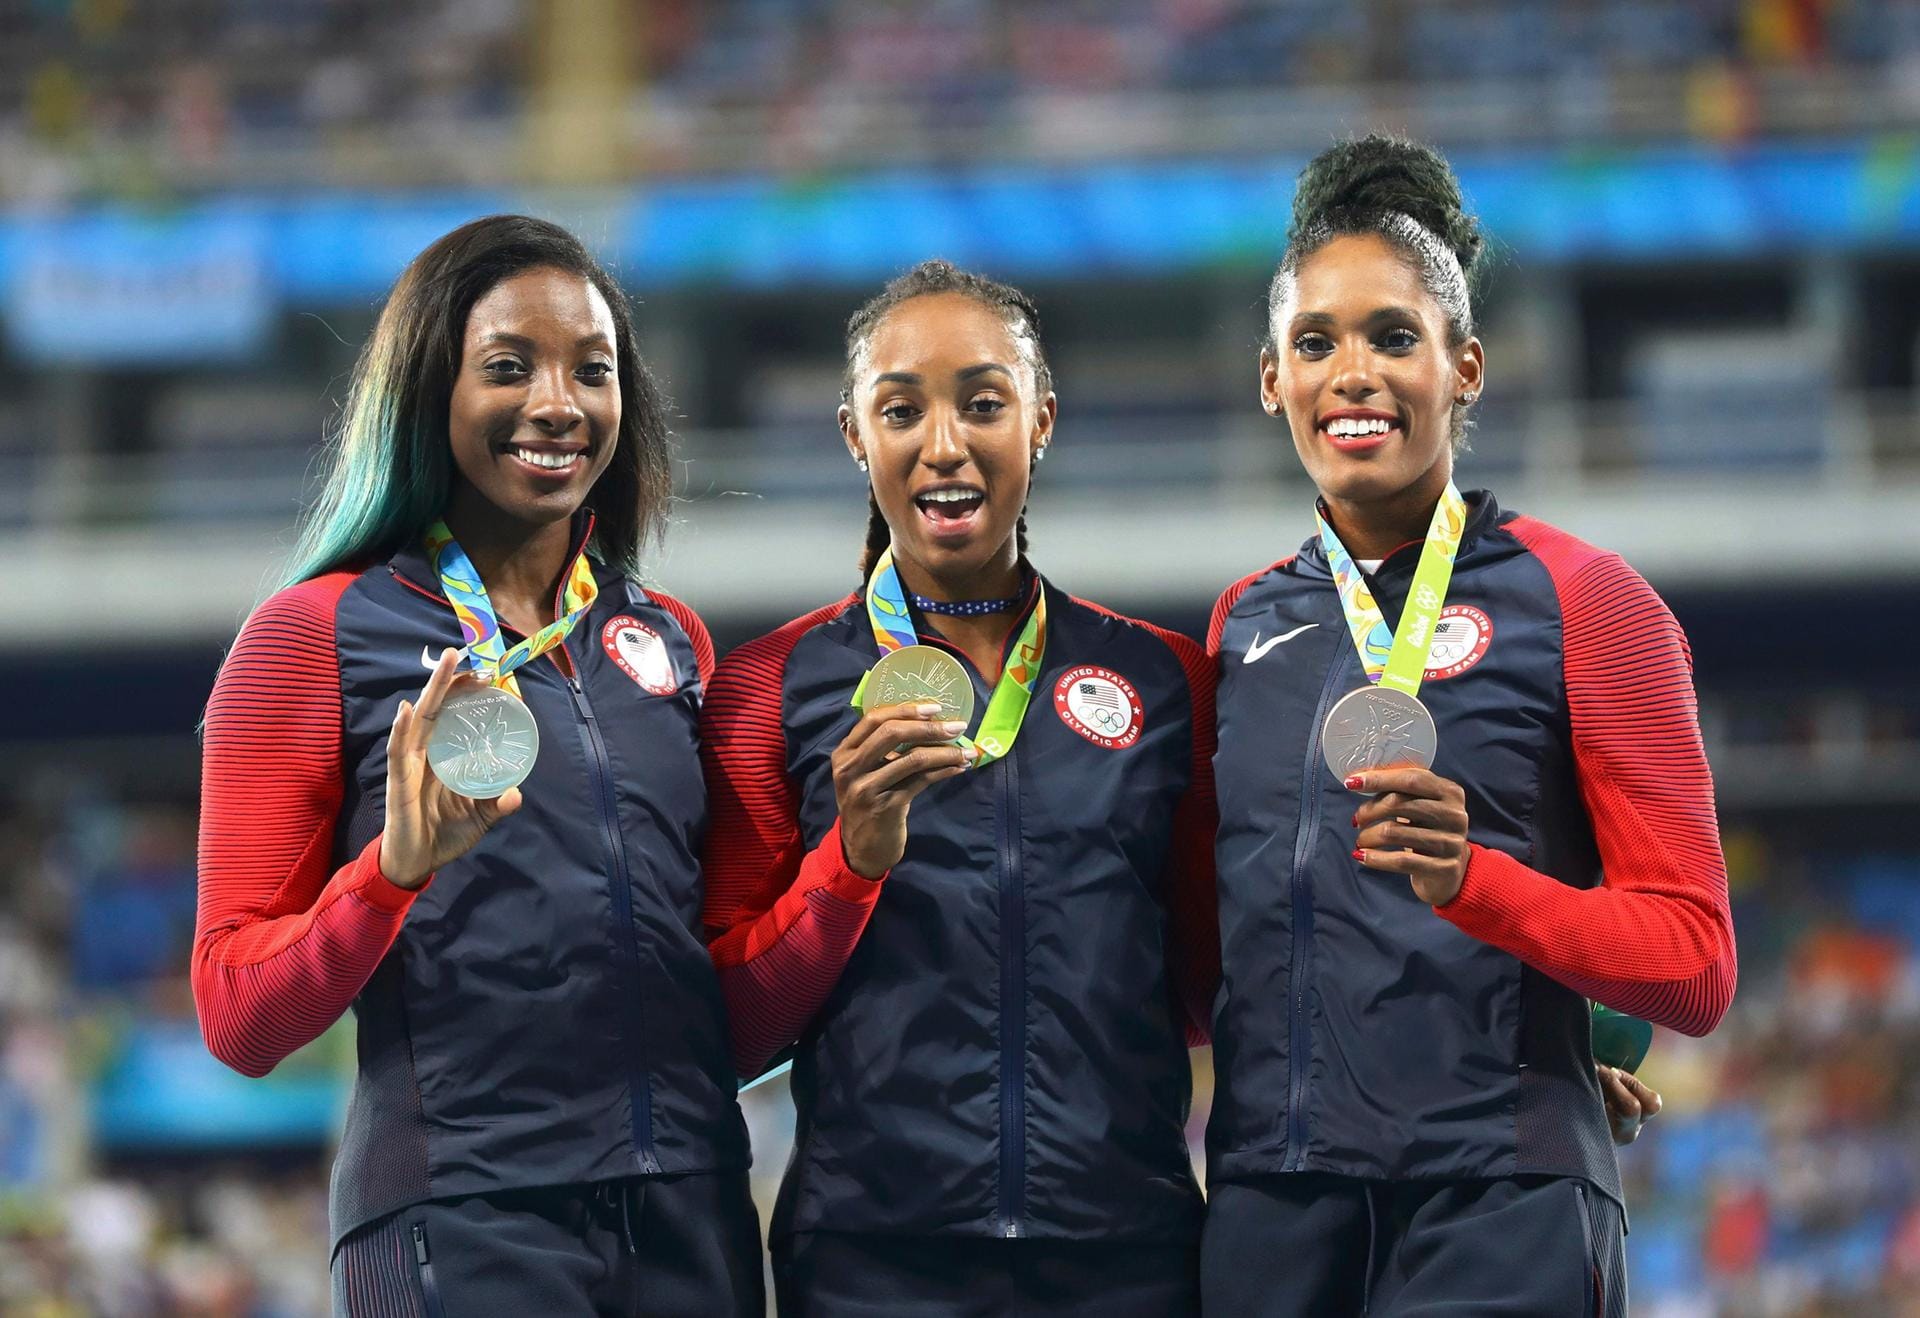 Bitte lächeln! Sichtlich zufrieden zeigen sich die neue Olympiasiegerin Brianna Rollins (Mitte), die Zweite Nia Ali (li.) und die Dritte Kristl Castlin (re.) mit ihren Medaillen auf dem Podium. Gestern Nacht setzten sich die drei US-Damen über 100 Meter Hürden durch und sorgten dafür, dass Gold, Silber und Bronze in die Vereinigten Staaten gehen.